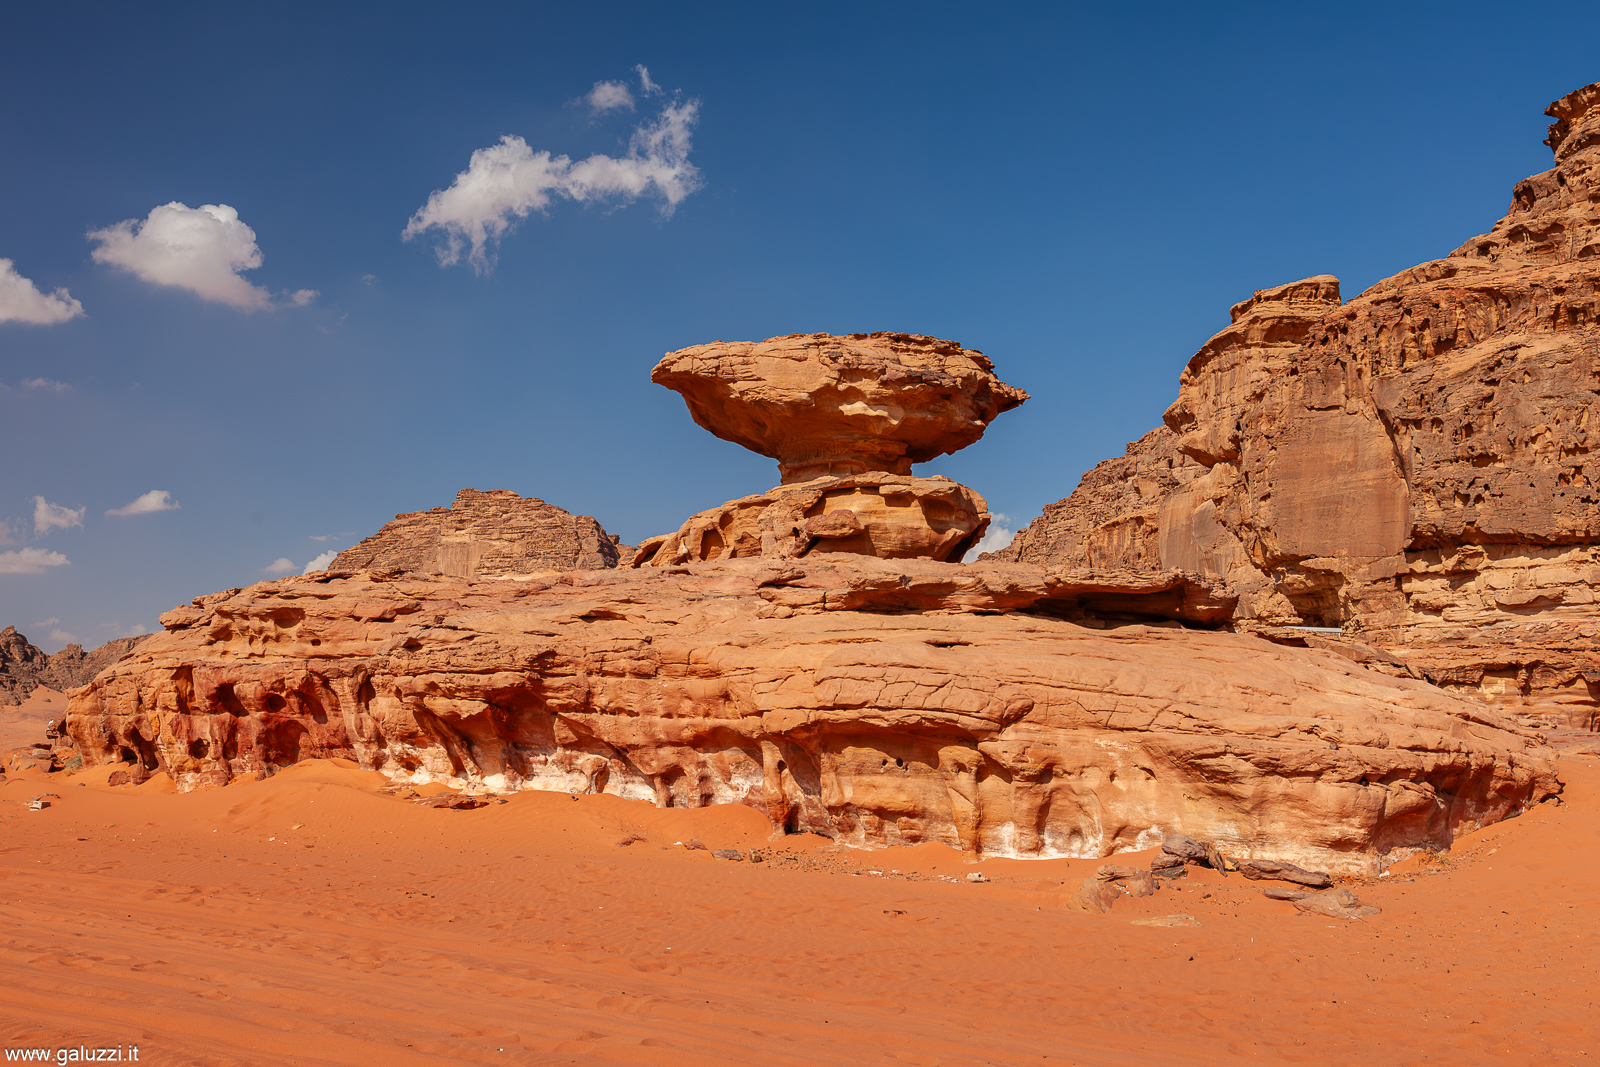 Wadi Rum: Mushroom Rock